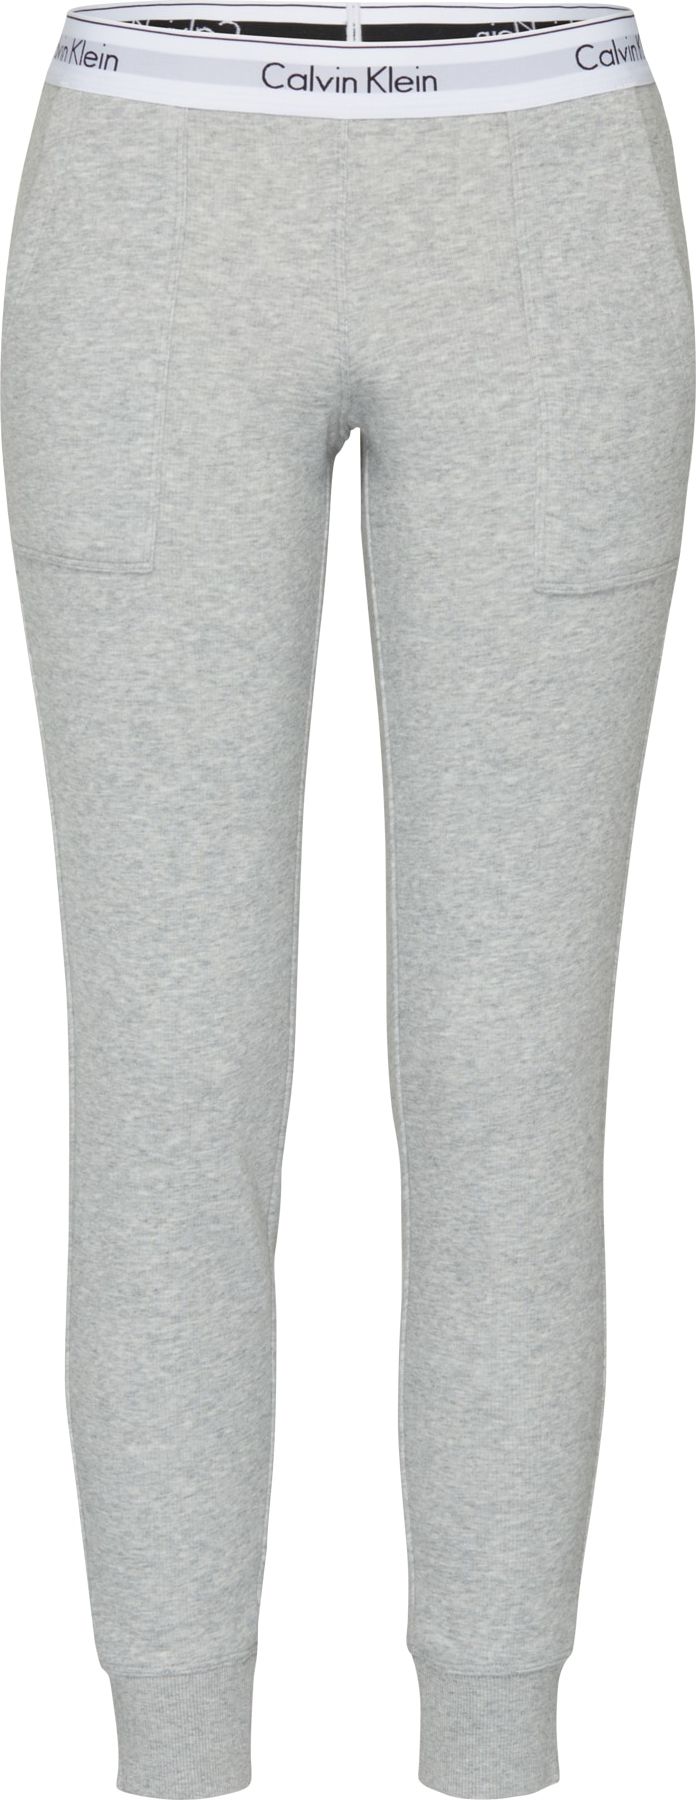 Calvin Klein Kalhoty 'Bottom' šedý melír / bílá / černá